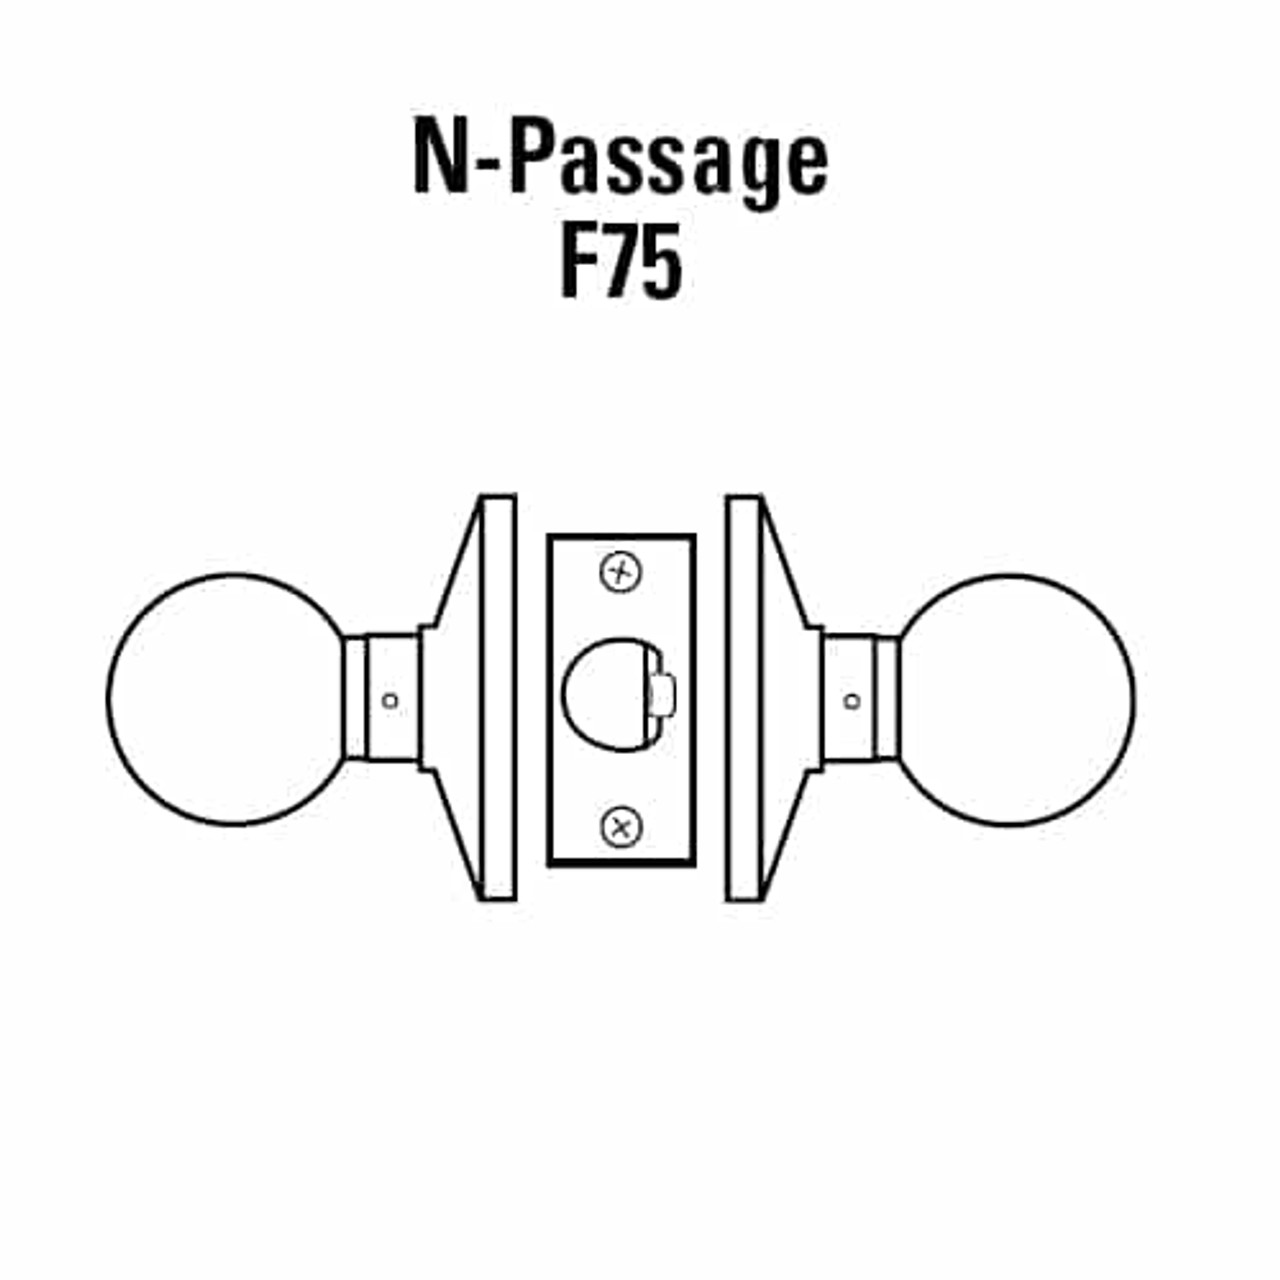 6K20N4DSTK606 Best 6K Series Passage Medium Duty Cylindrical Knob Locks with Round Style in Satin Brass